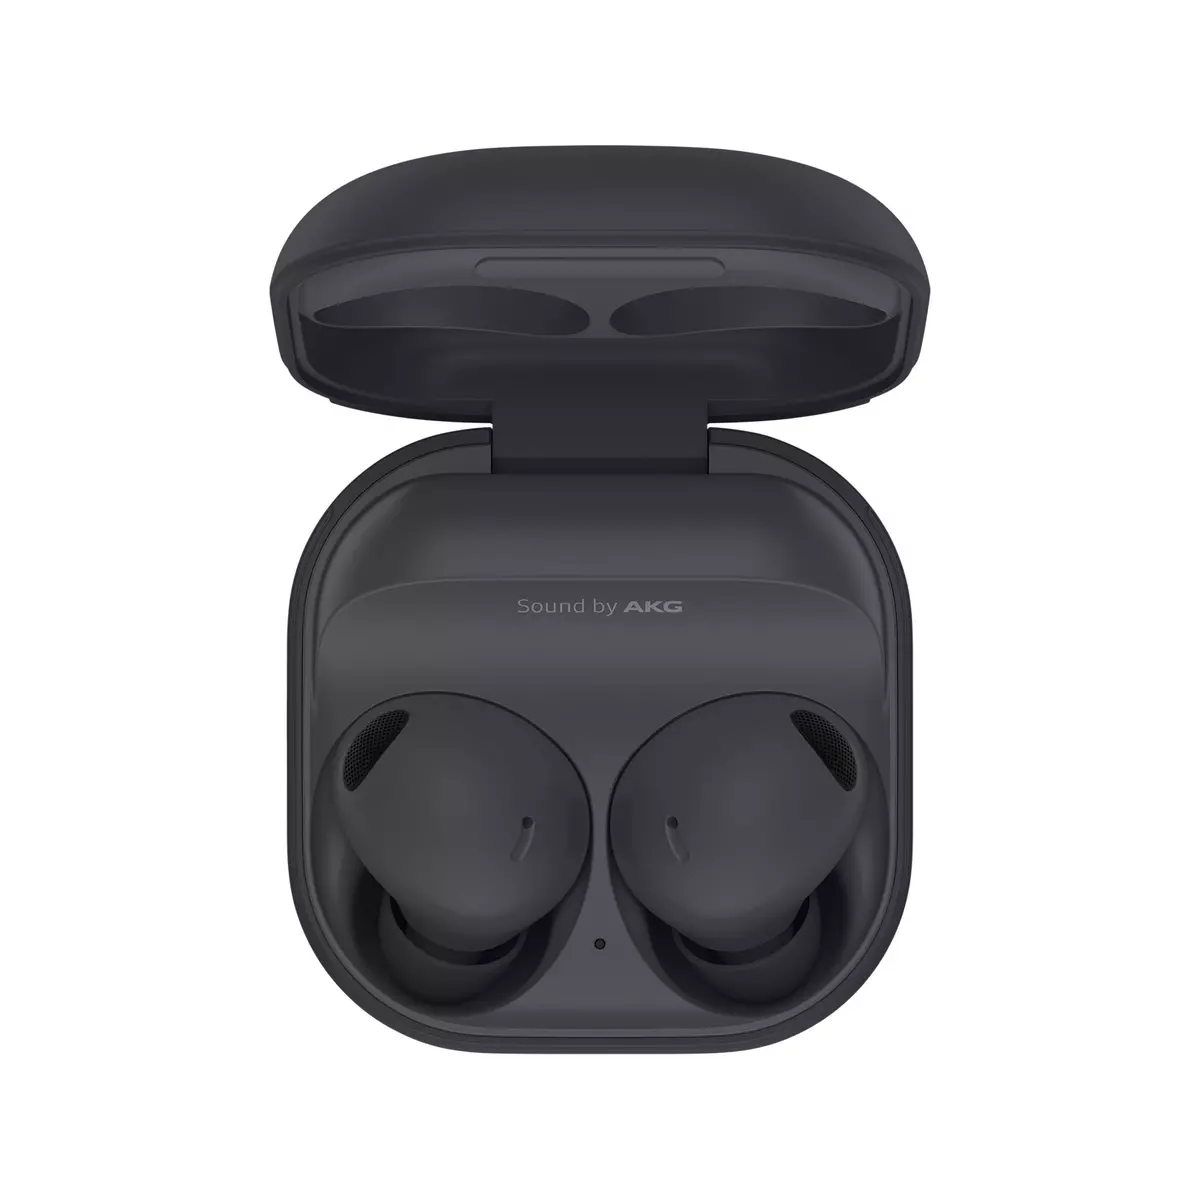 Ecouteur Kit Mains libre noir pour iPhone, iPad, Galaxy